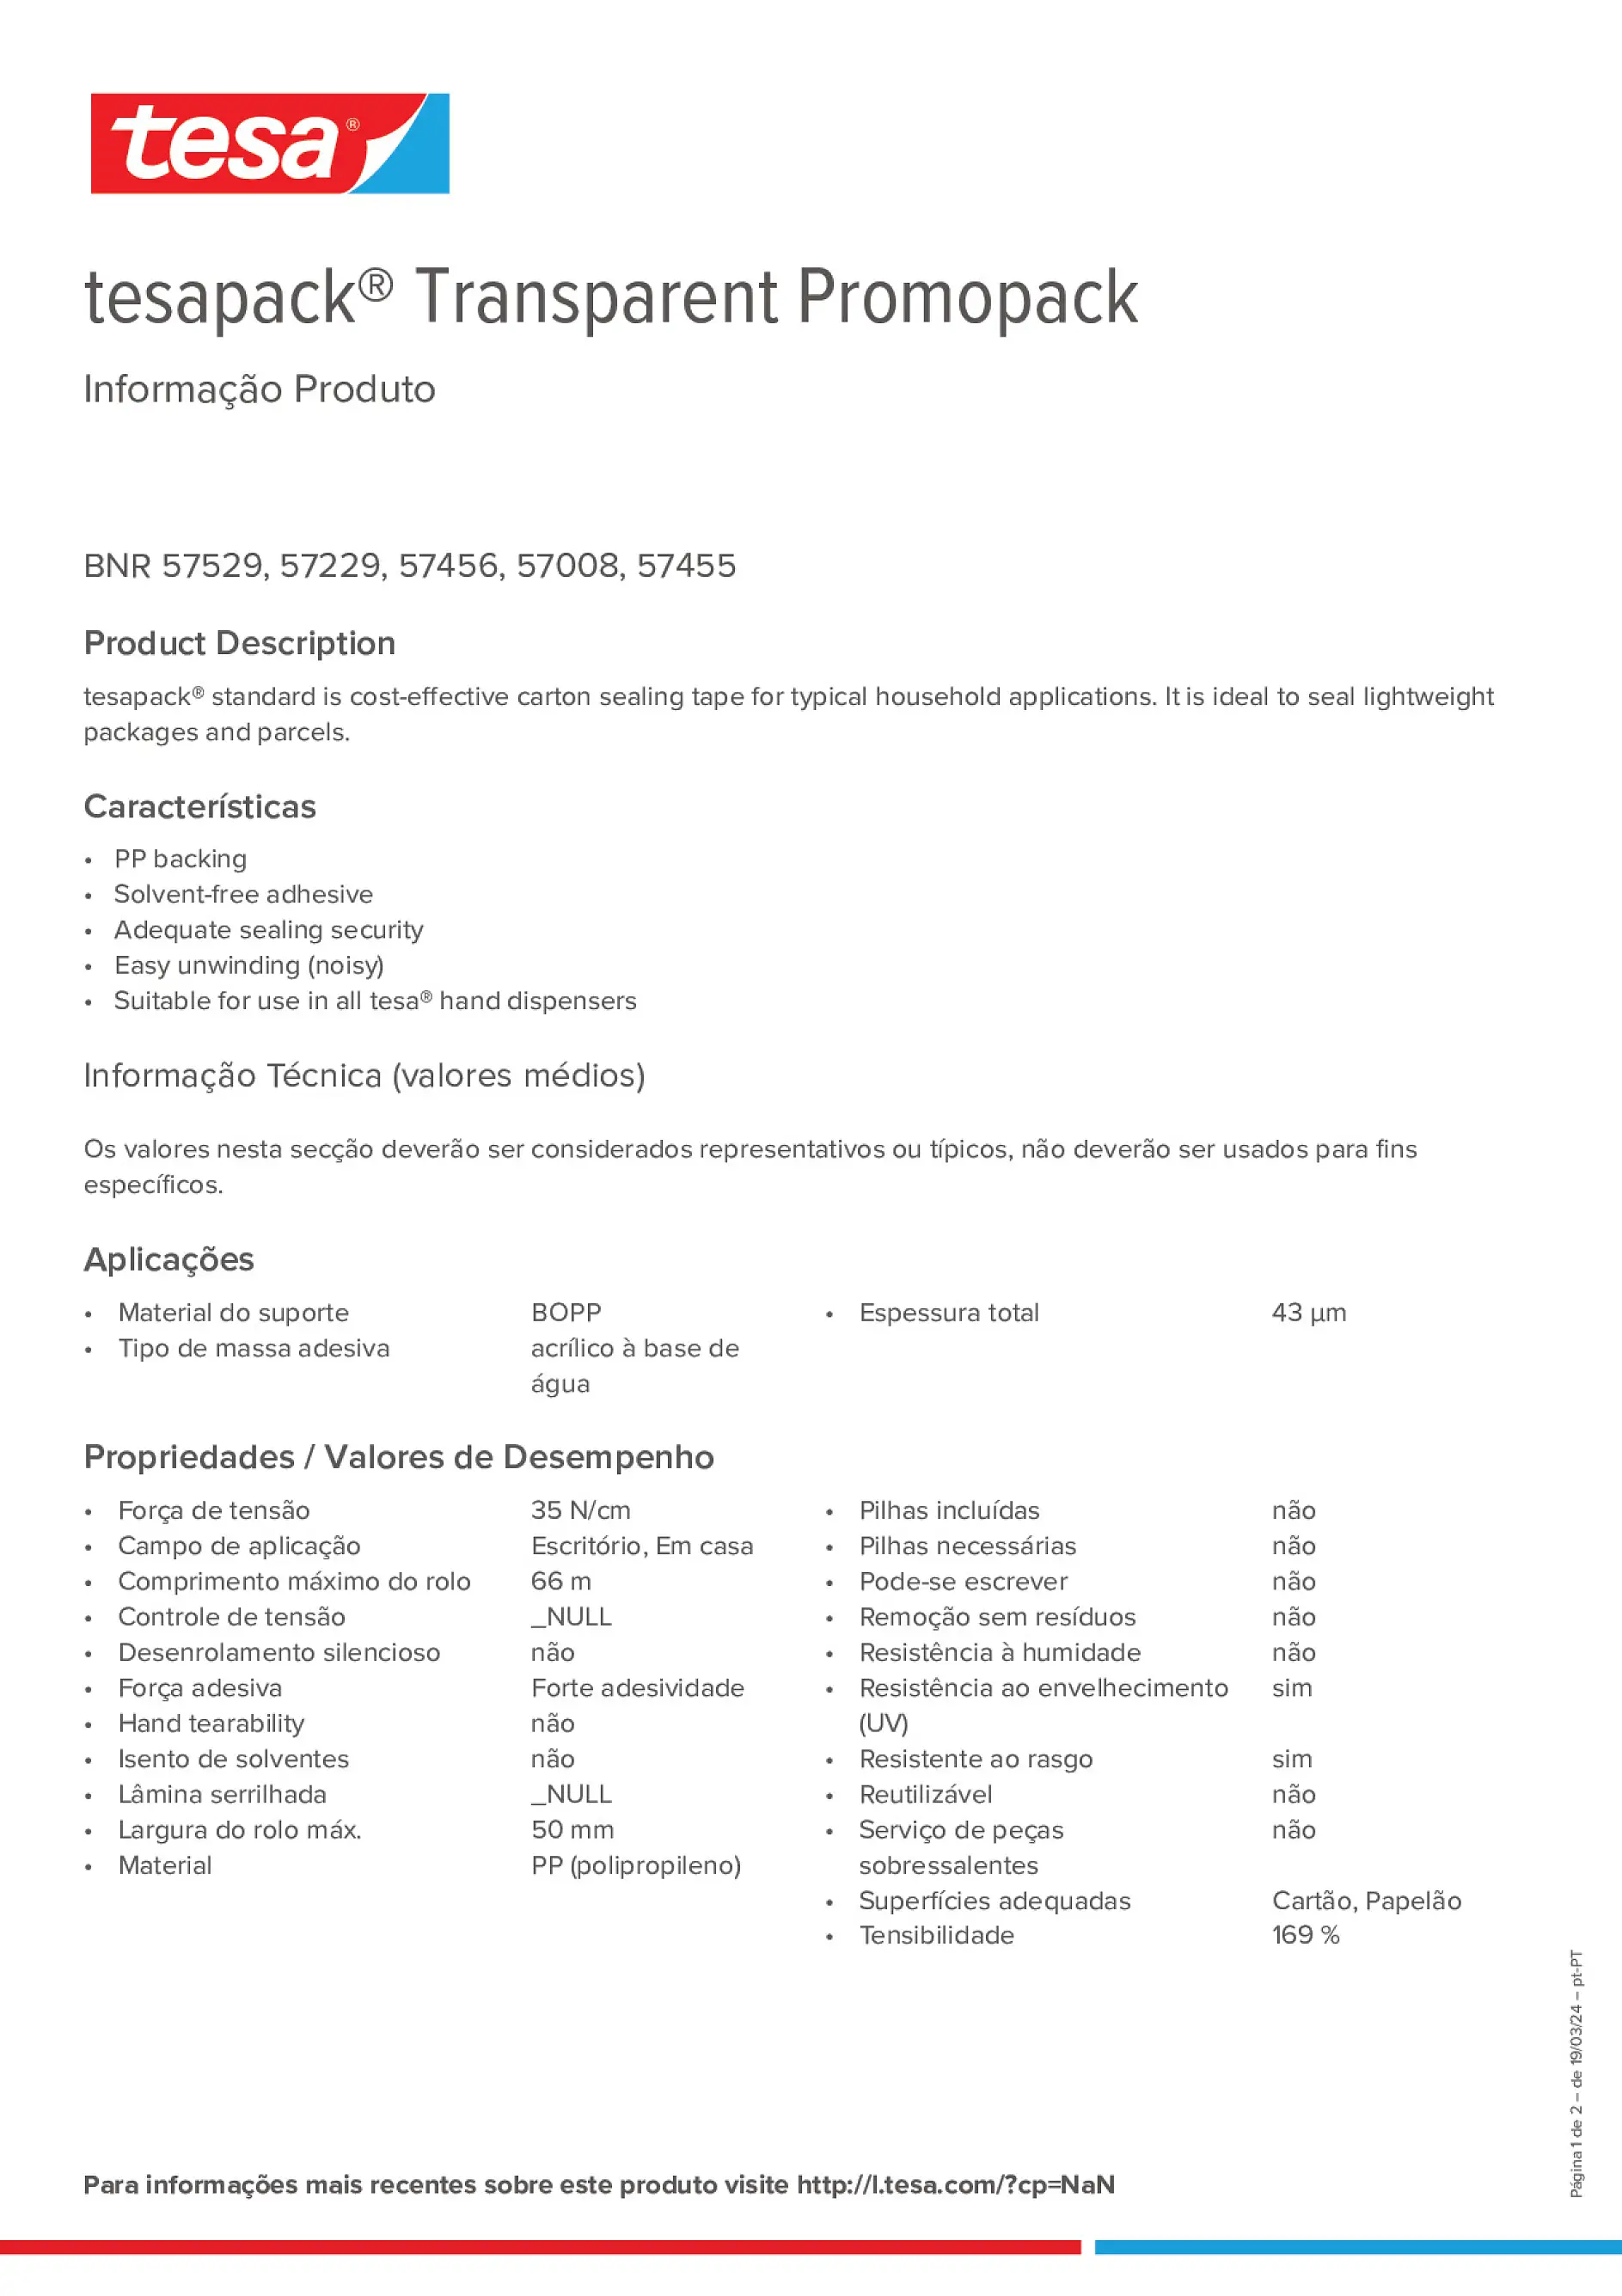 Product information_tesapack® 57456_pt-PT